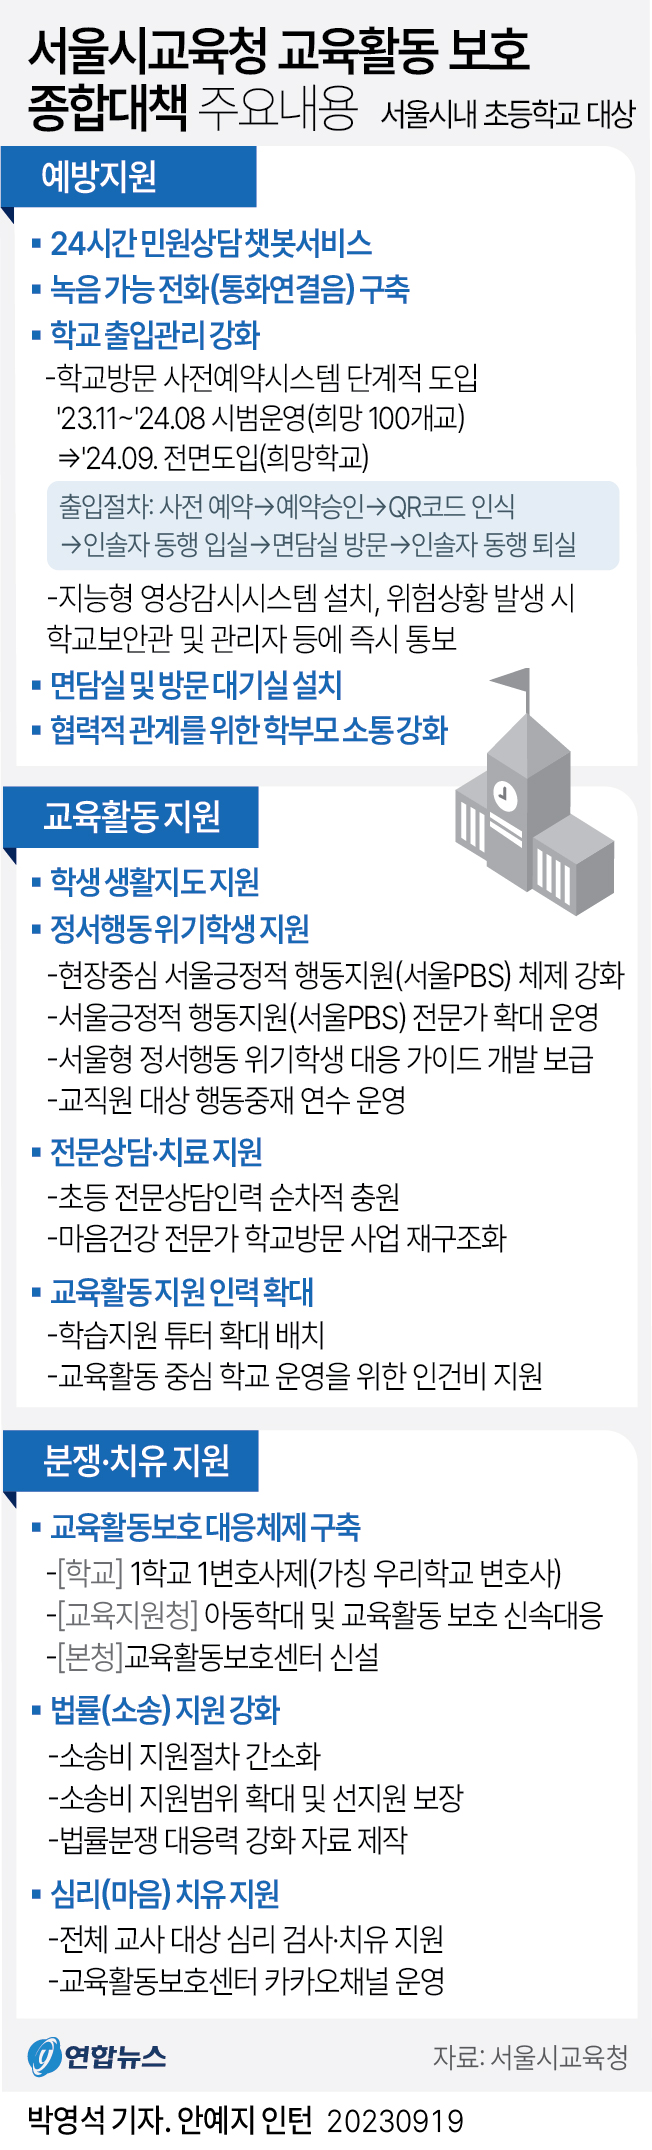 [그래픽] 서울시교육청 교육활동 보호 종합대책 주요내용